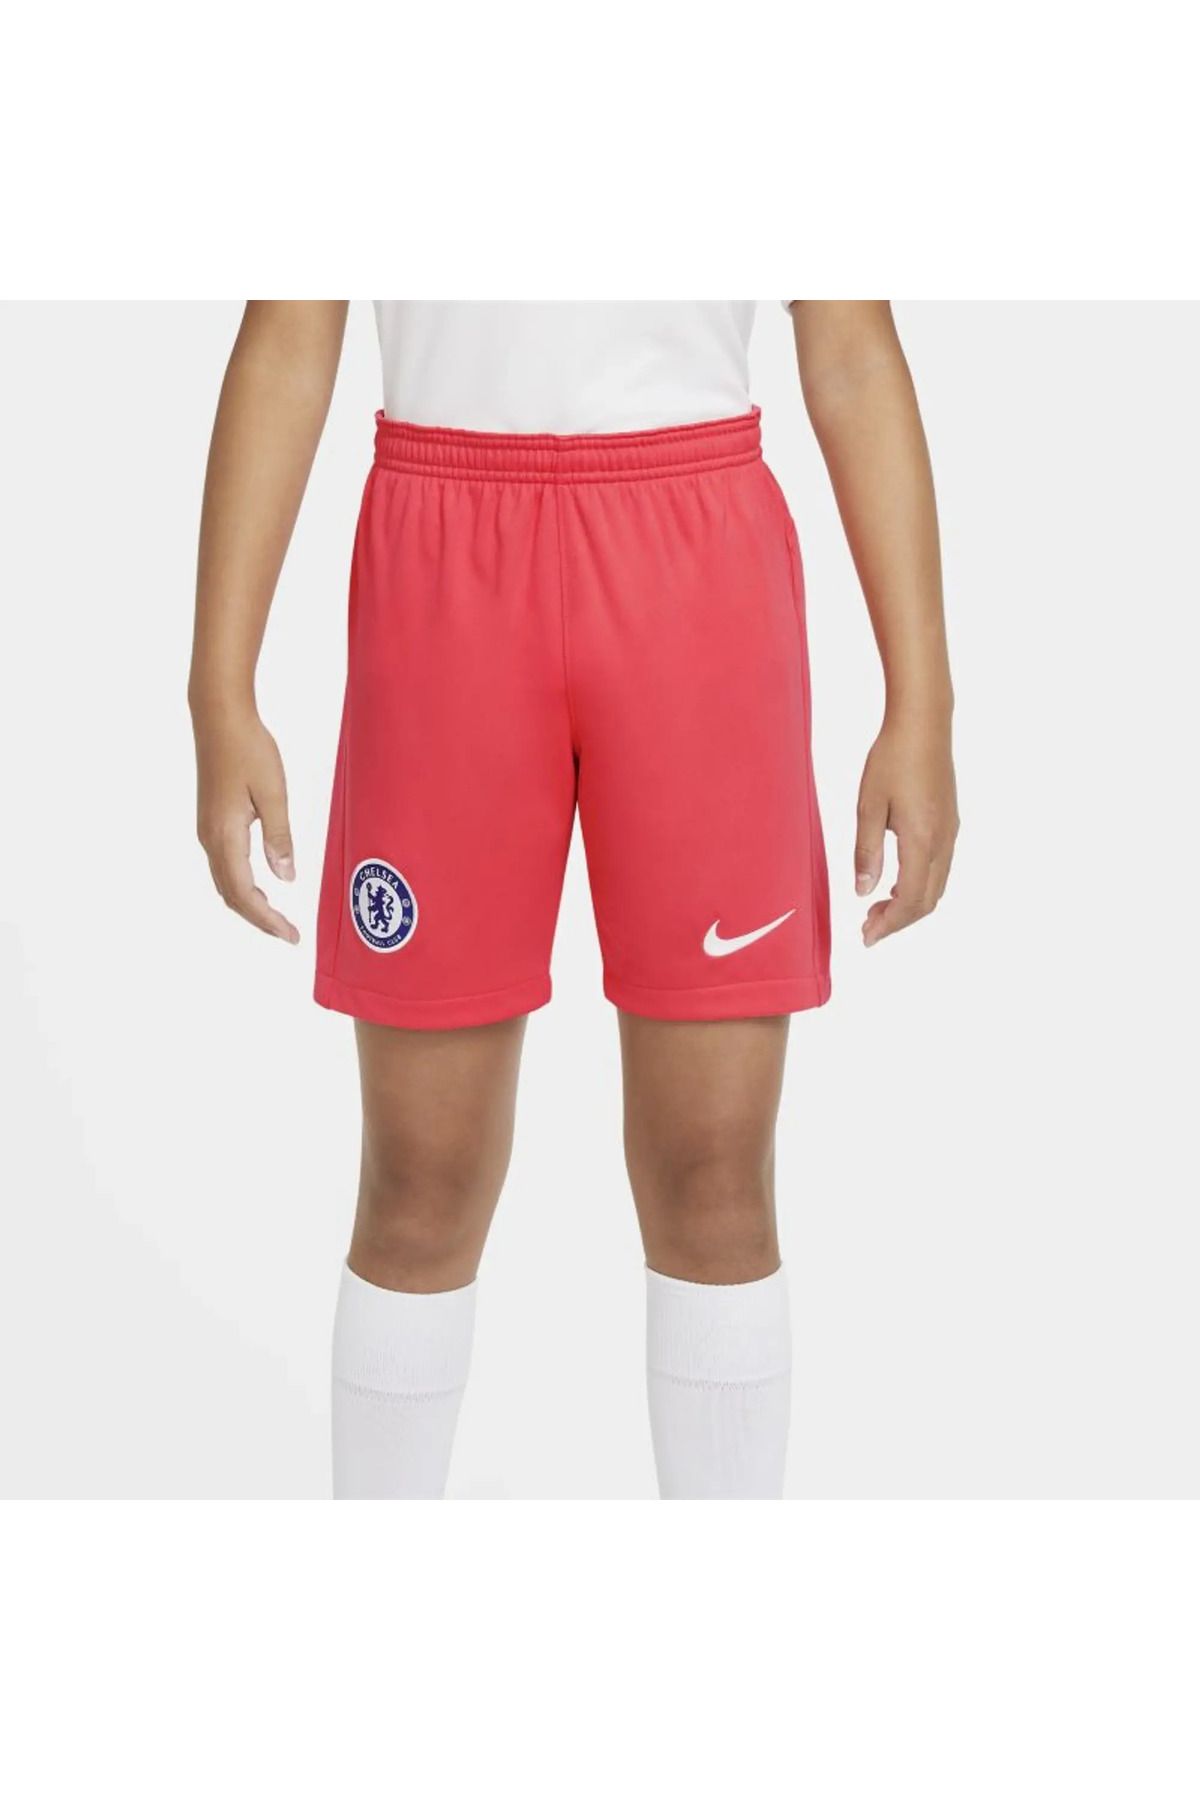 Nike dri fit Chelsea Kids unisex çocuk kırmızı futbol şort ck7881